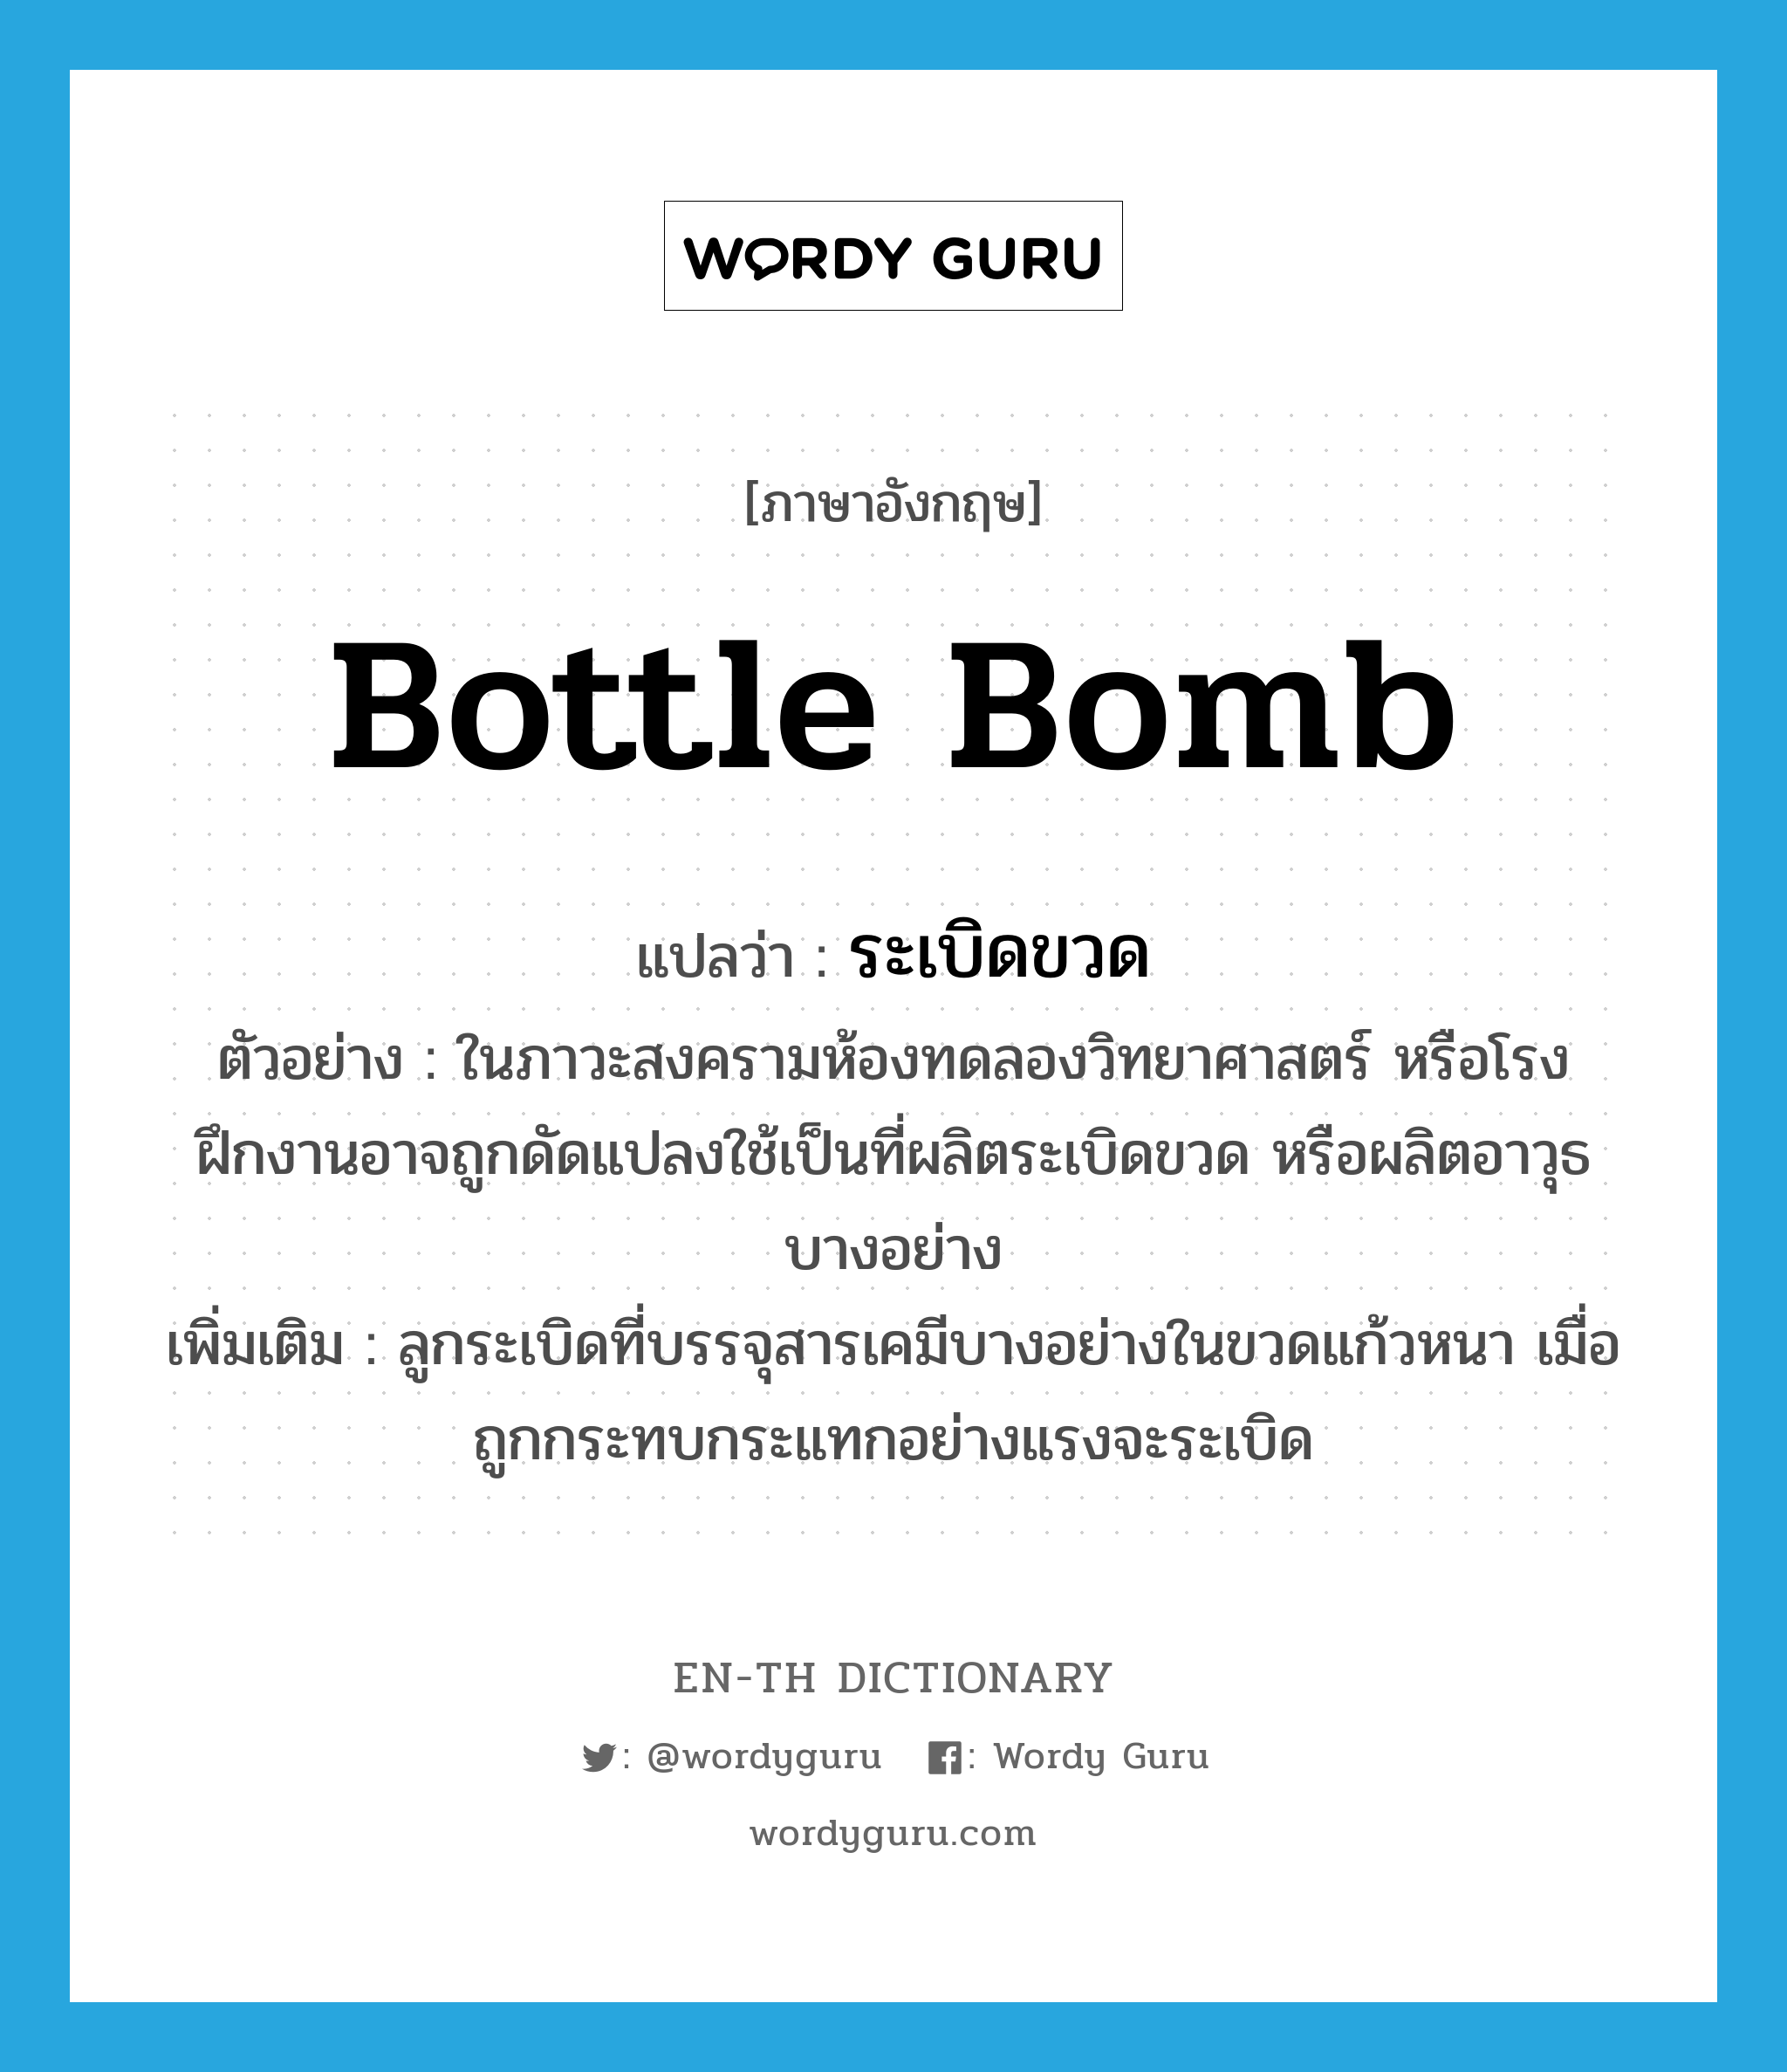 bottle bomb แปลว่า?, คำศัพท์ภาษาอังกฤษ bottle bomb แปลว่า ระเบิดขวด ประเภท N ตัวอย่าง ในภาวะสงครามห้องทดลองวิทยาศาสตร์ หรือโรงฝึกงานอาจถูกดัดแปลงใช้เป็นที่ผลิตระเบิดขวด หรือผลิตอาวุธบางอย่าง เพิ่มเติม ลูกระเบิดที่บรรจุสารเคมีบางอย่างในขวดแก้วหนา เมื่อถูกกระทบกระแทกอย่างแรงจะระเบิด หมวด N